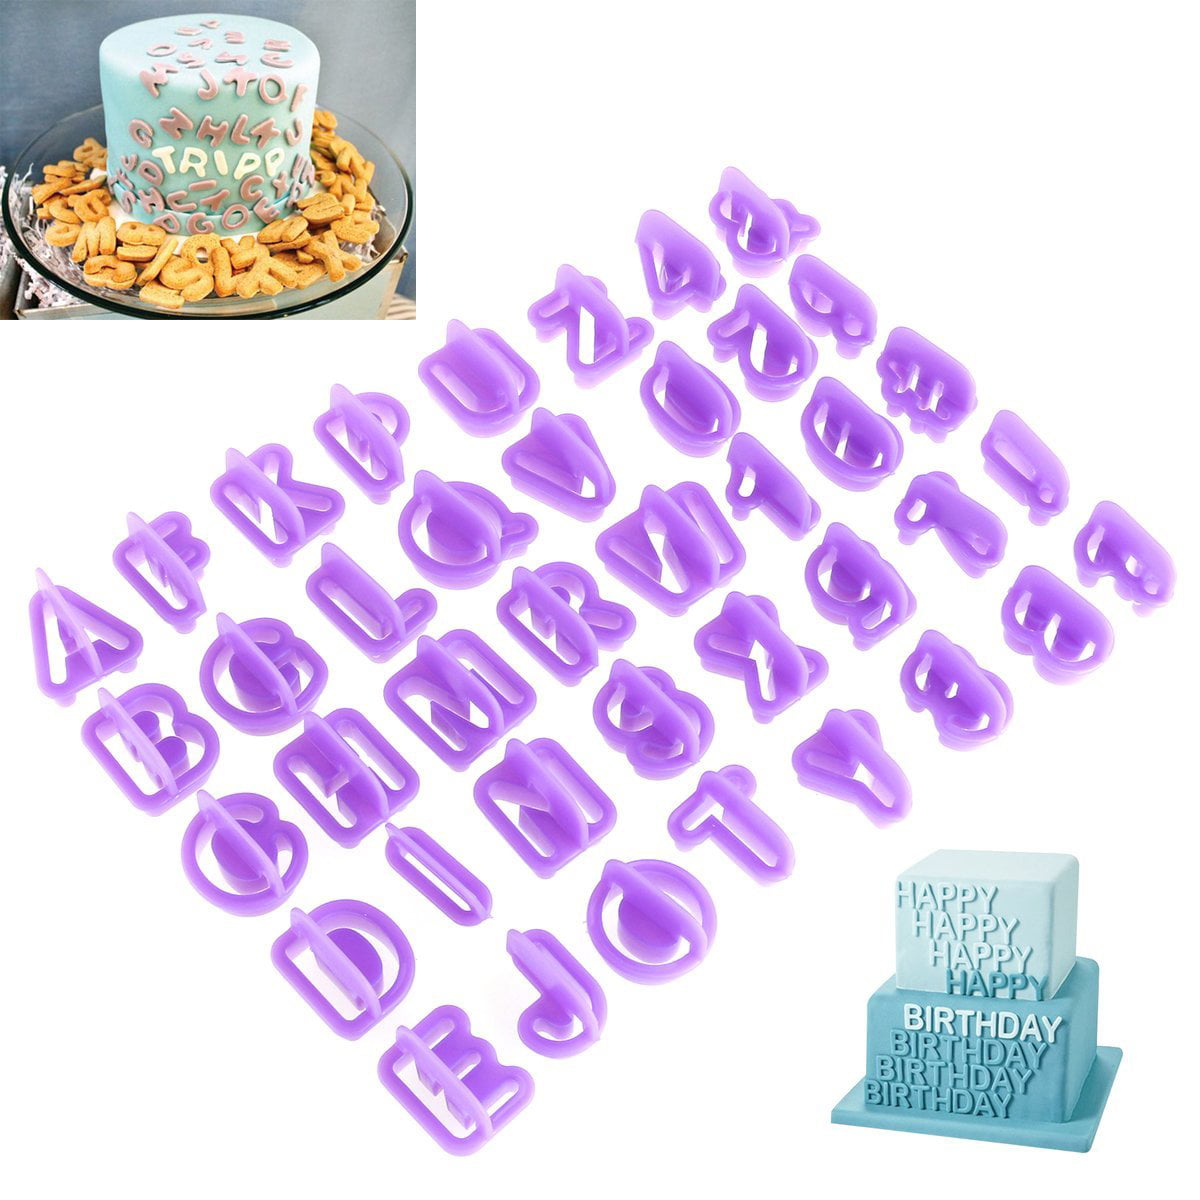 Silicone Mold Alphabet Letter Number Shape Baking Fondant Cake Decorating Tools 